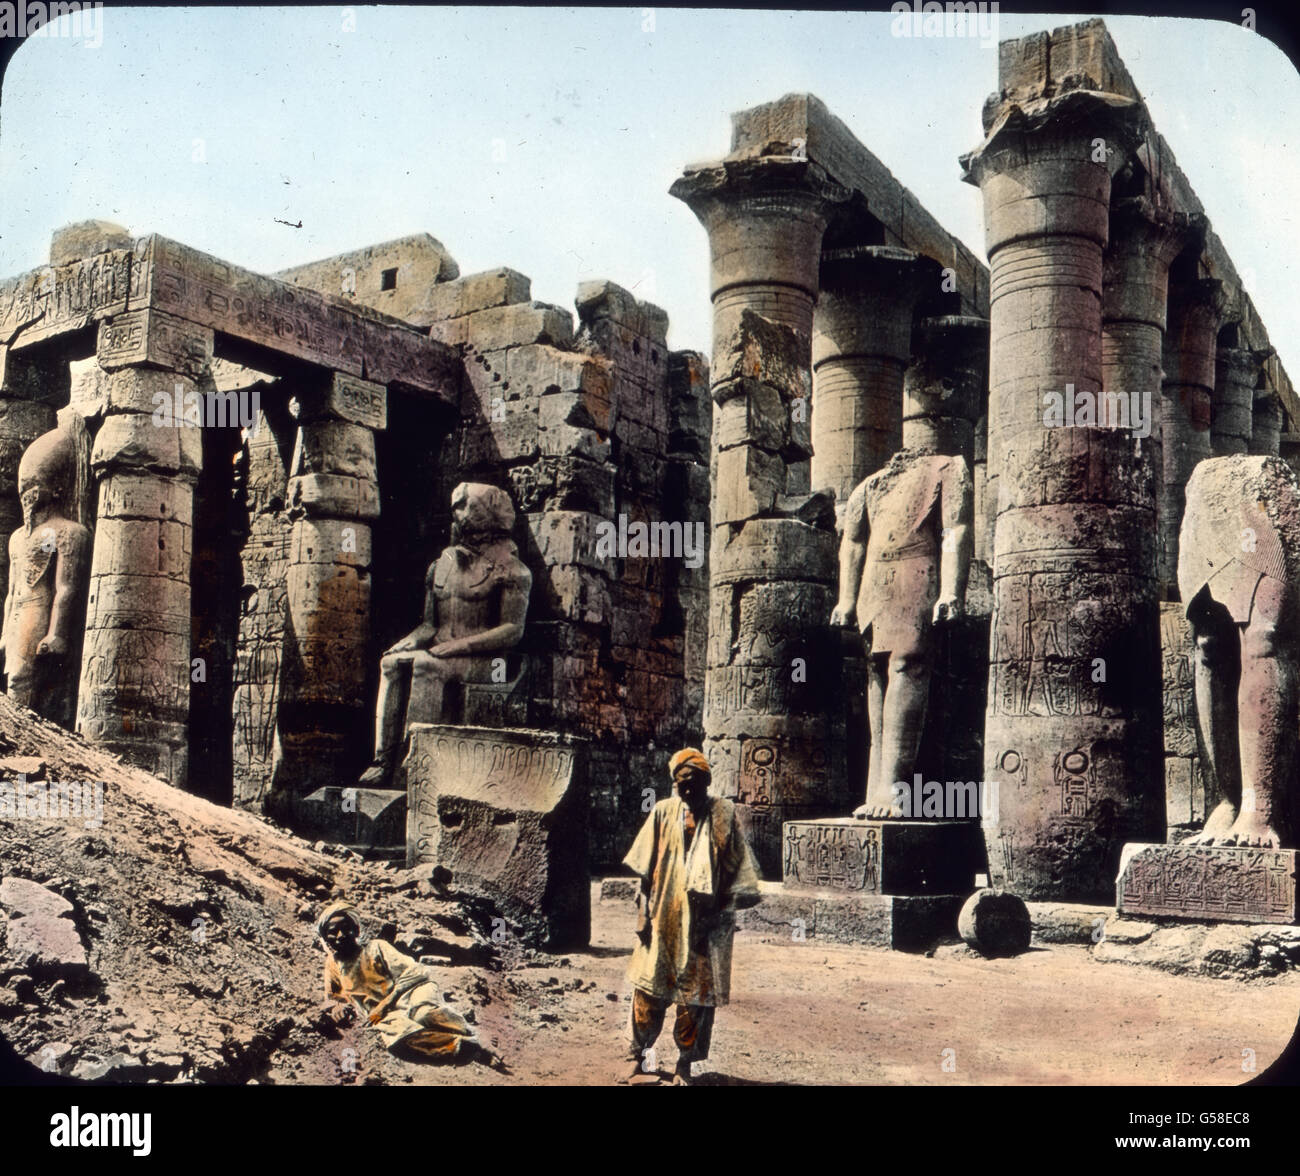 Wir machen jetzt eine Expedition nach Oberägypten. Hier lag in grauer Vorzeit Theben, die alte Hauptstadt des Reiches. Hier erbauten die Herrscher Tempel und Paläste von wahrhaft gewaltiger Größe. Wir sehen hier Ruinen des berühmten Amuntempels, einstmals vielleicht das größte Bauwerk der Welt. Er war 260 m lang und über 100 m breit. Dort stehen noch heute die größten Säulen der Welt. Erbaut wurde der Tempel um 1400 v. Chr. Es sei aber erwähnt, dass dieser Tempel nicht das einzige Denkmal altägyptischer Baukunst ist.  Trip around the world, Egypt, Luxor,Temple of Amun,  travel, journey, 1920s, Stock Photo